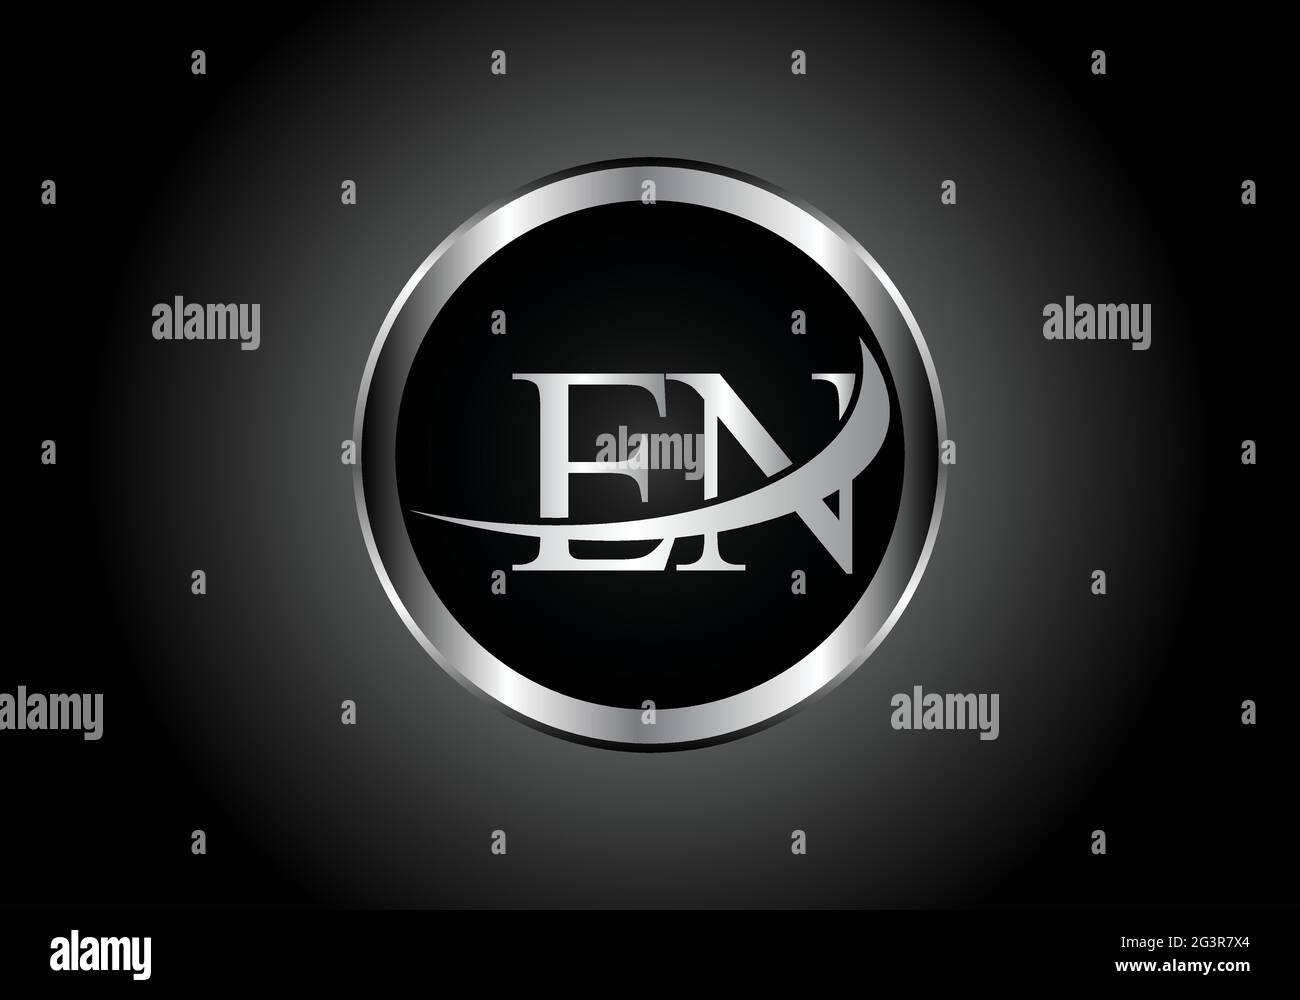 Lettre argentée E N métal combinaison alphabet logo design icône avec la couleur grise sur le noir et blanc dégradé design pour une entreprise ou une entreprise Illustration de Vecteur